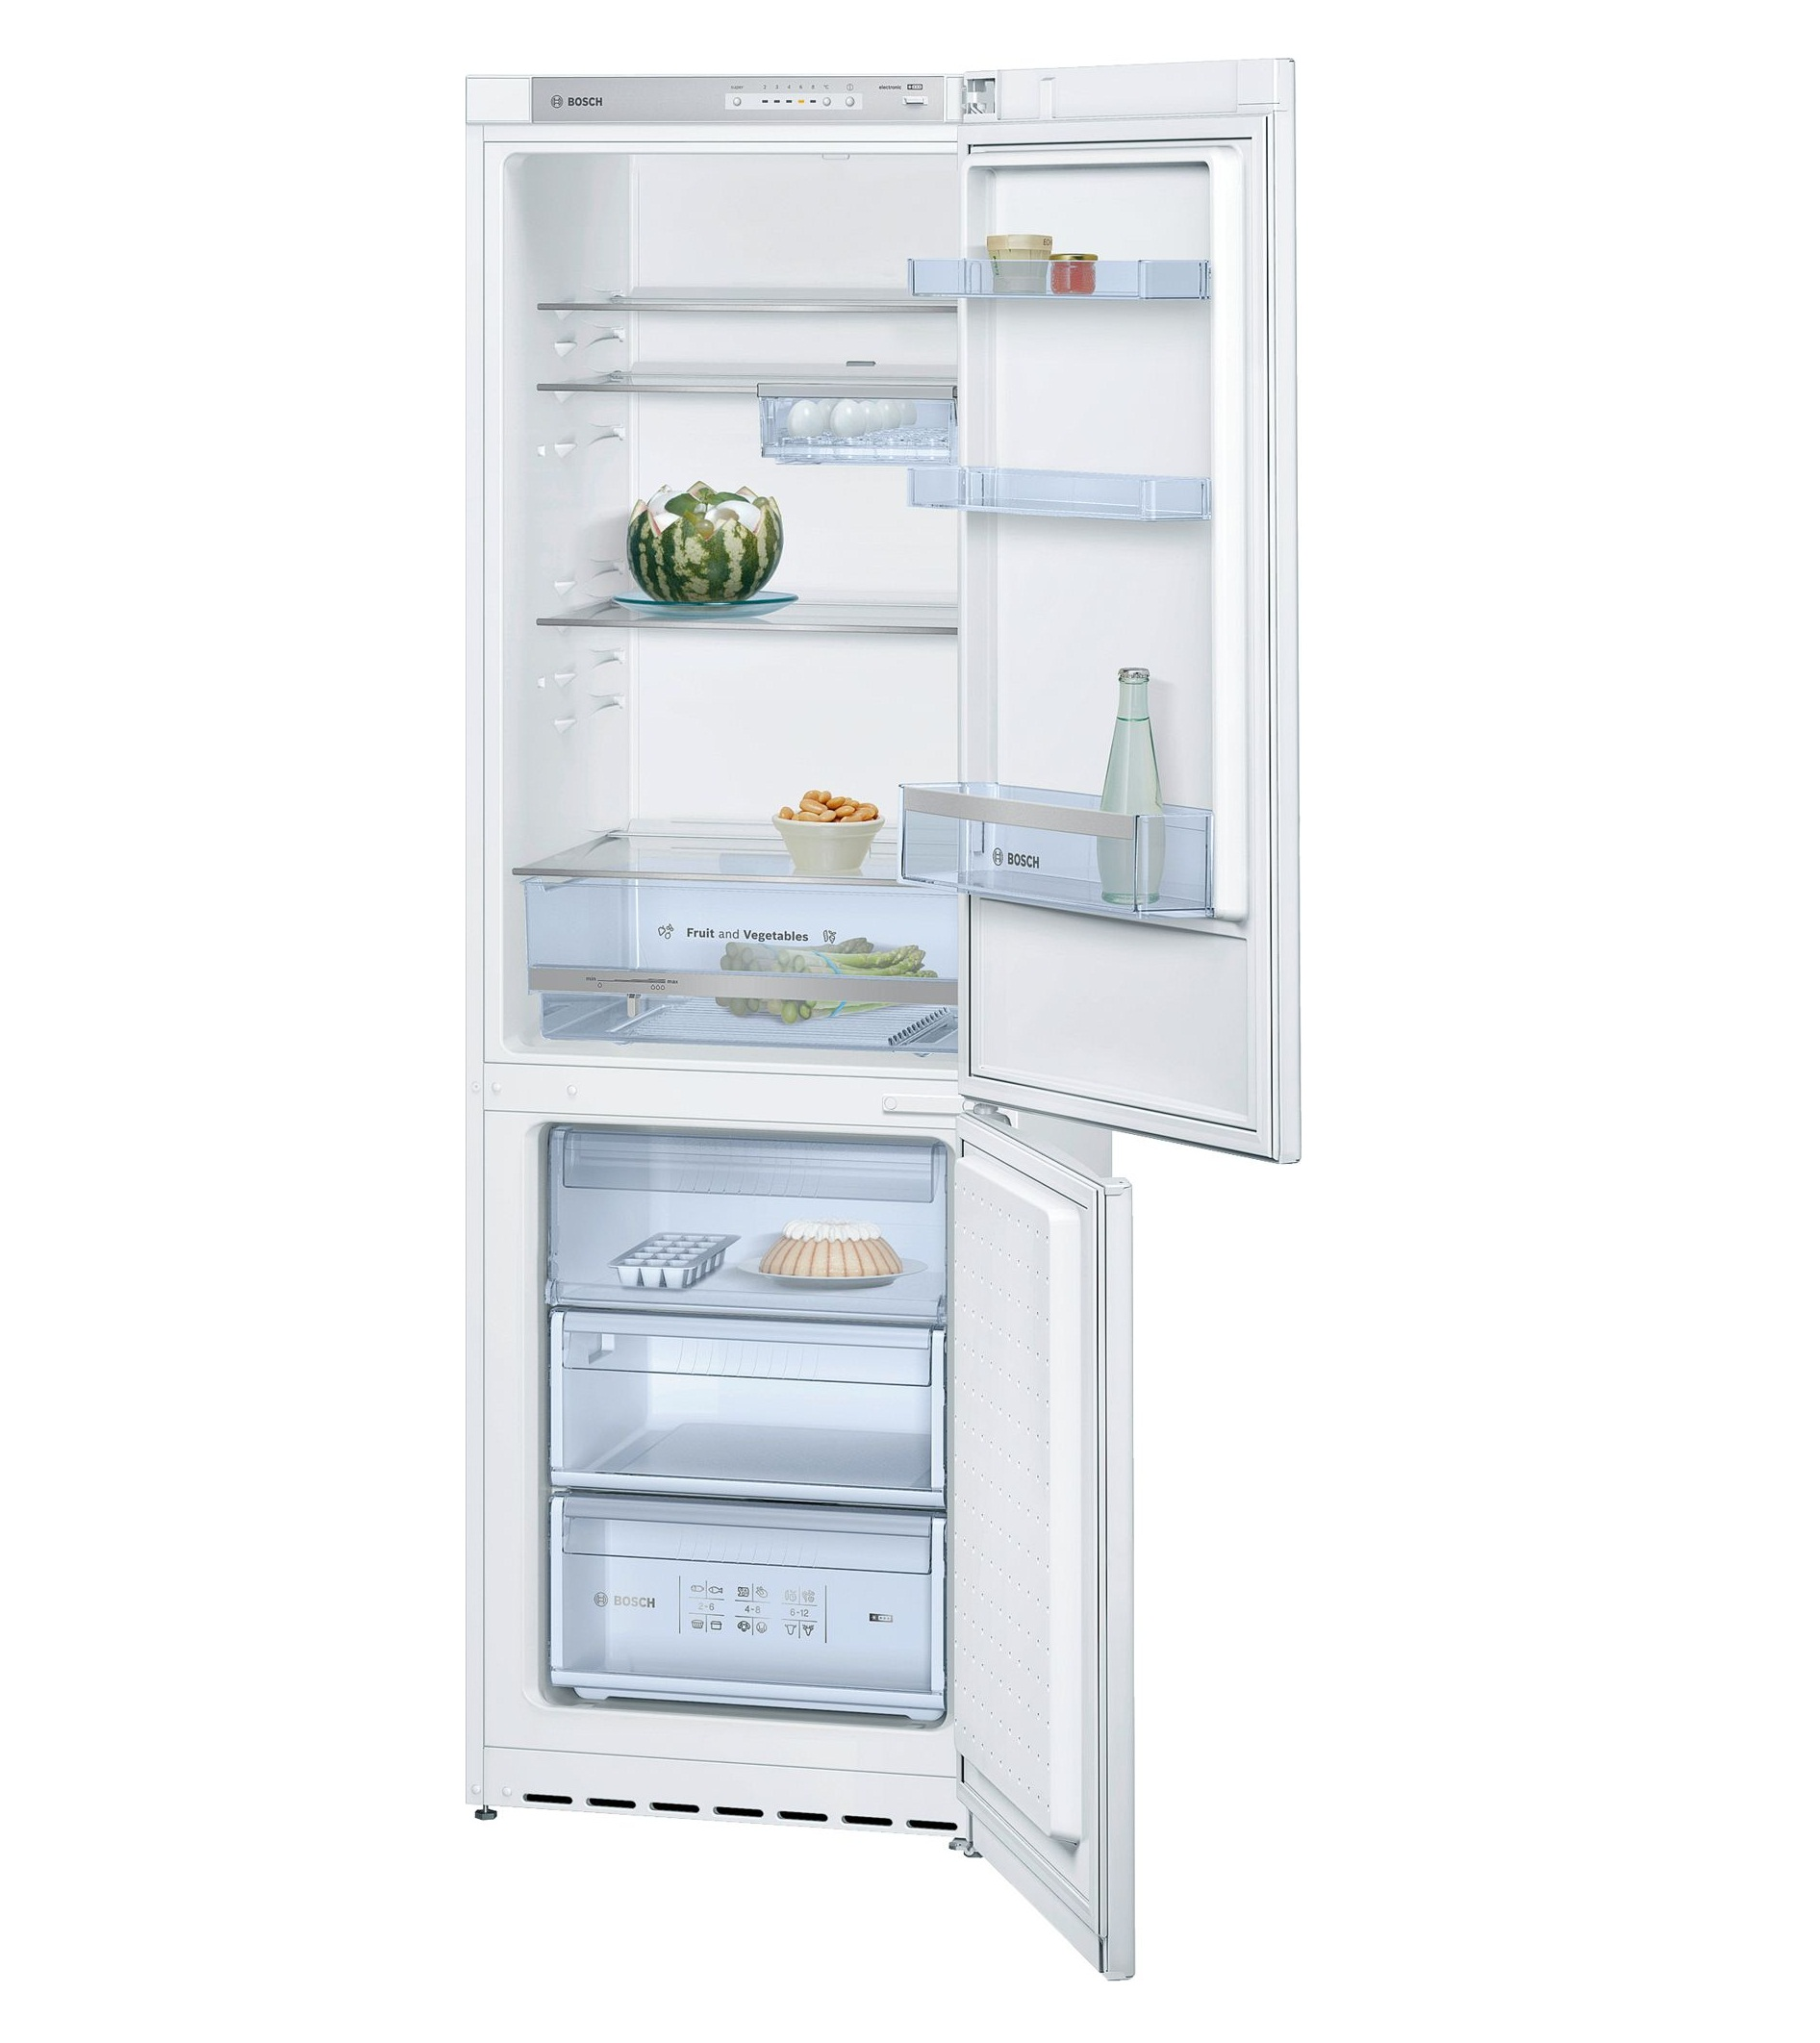 Tủ lạnh Bosch KGV36VW23E được thiết kế với nhiều ngăn cho nhiều mục đích sử dụng khác nhau